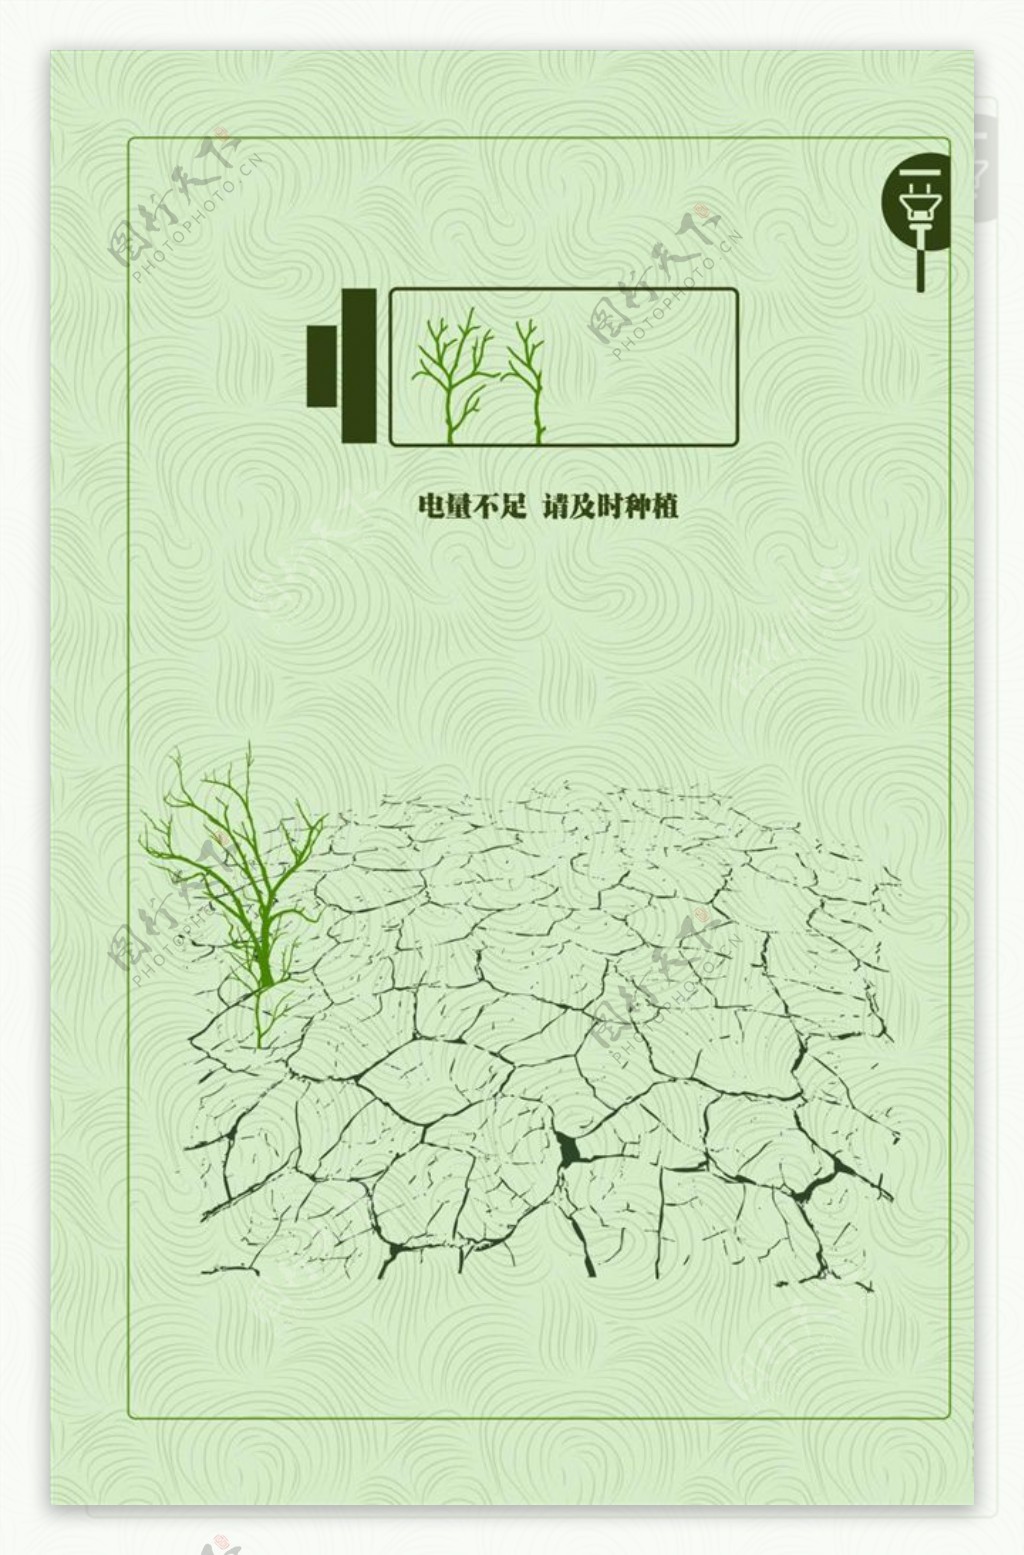 环保海报模板源文件宣传活动设计